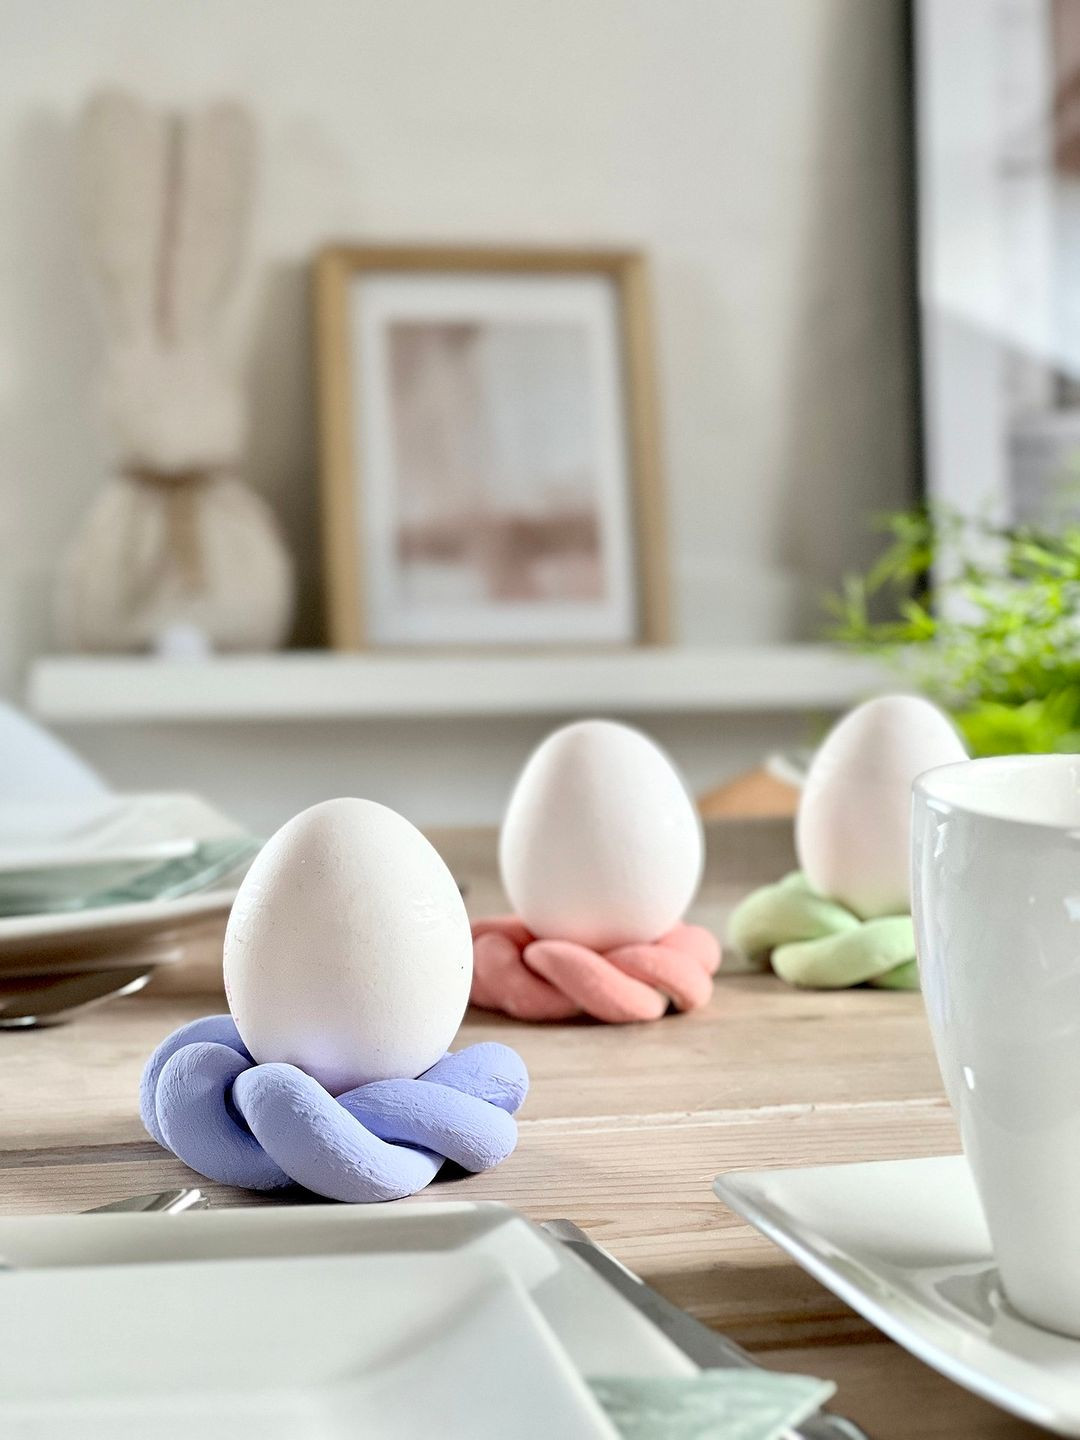 Naučte se vyrábět držáky na vajíčka 🐣 

Povedlo se vám to? 

#kikcz #kikdeko #kikdeco #kikaccessoires #deco #decorating #jaro #jarnidecoration  #eggholder